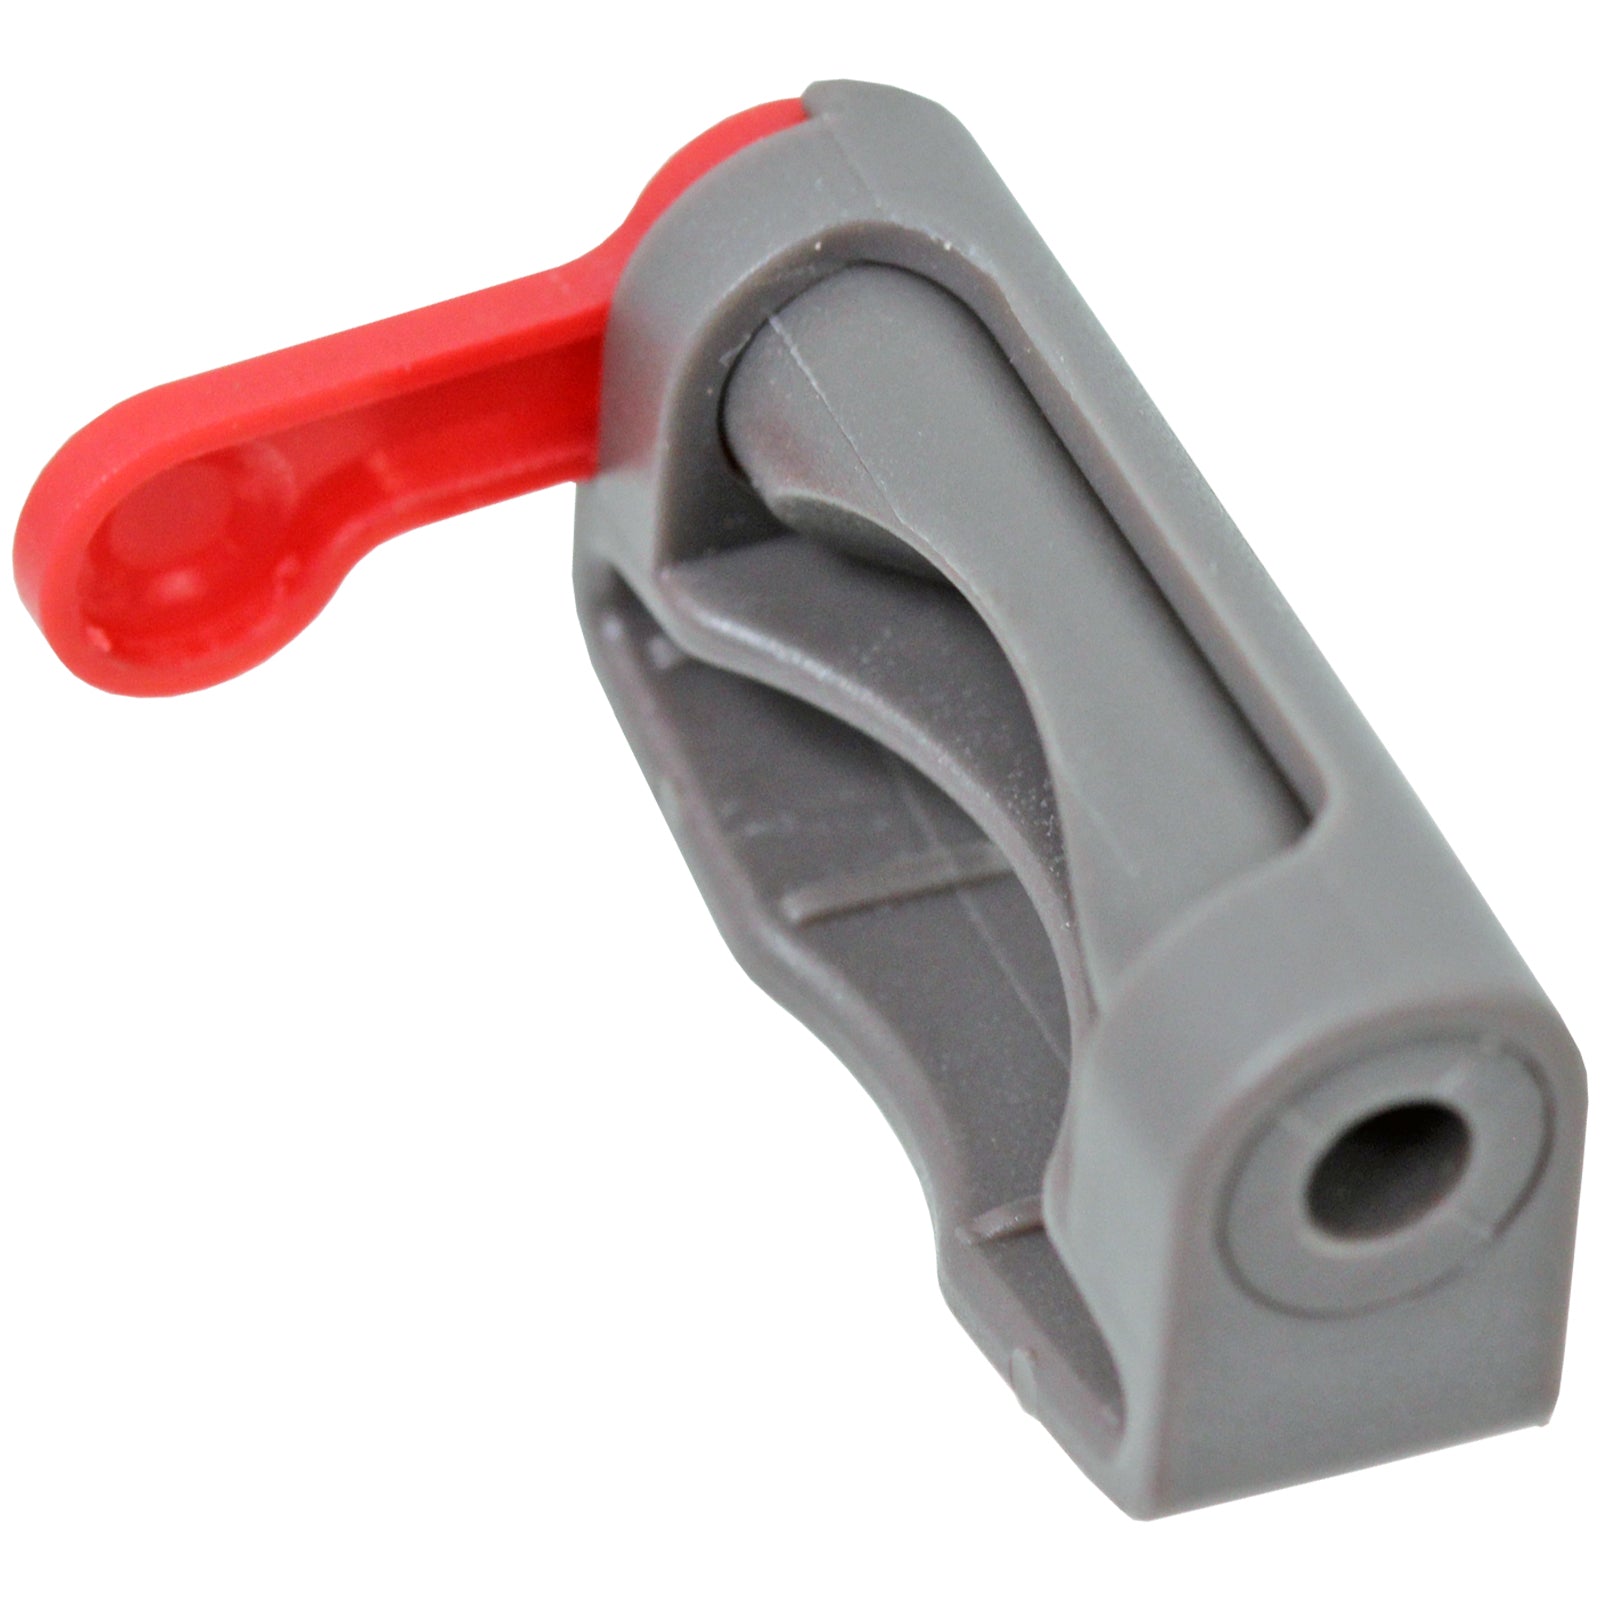 Trigger Lock for DYSON V6 V7 V8 V10 V11 Vacuum Cleaner Cordless Power Holder Button